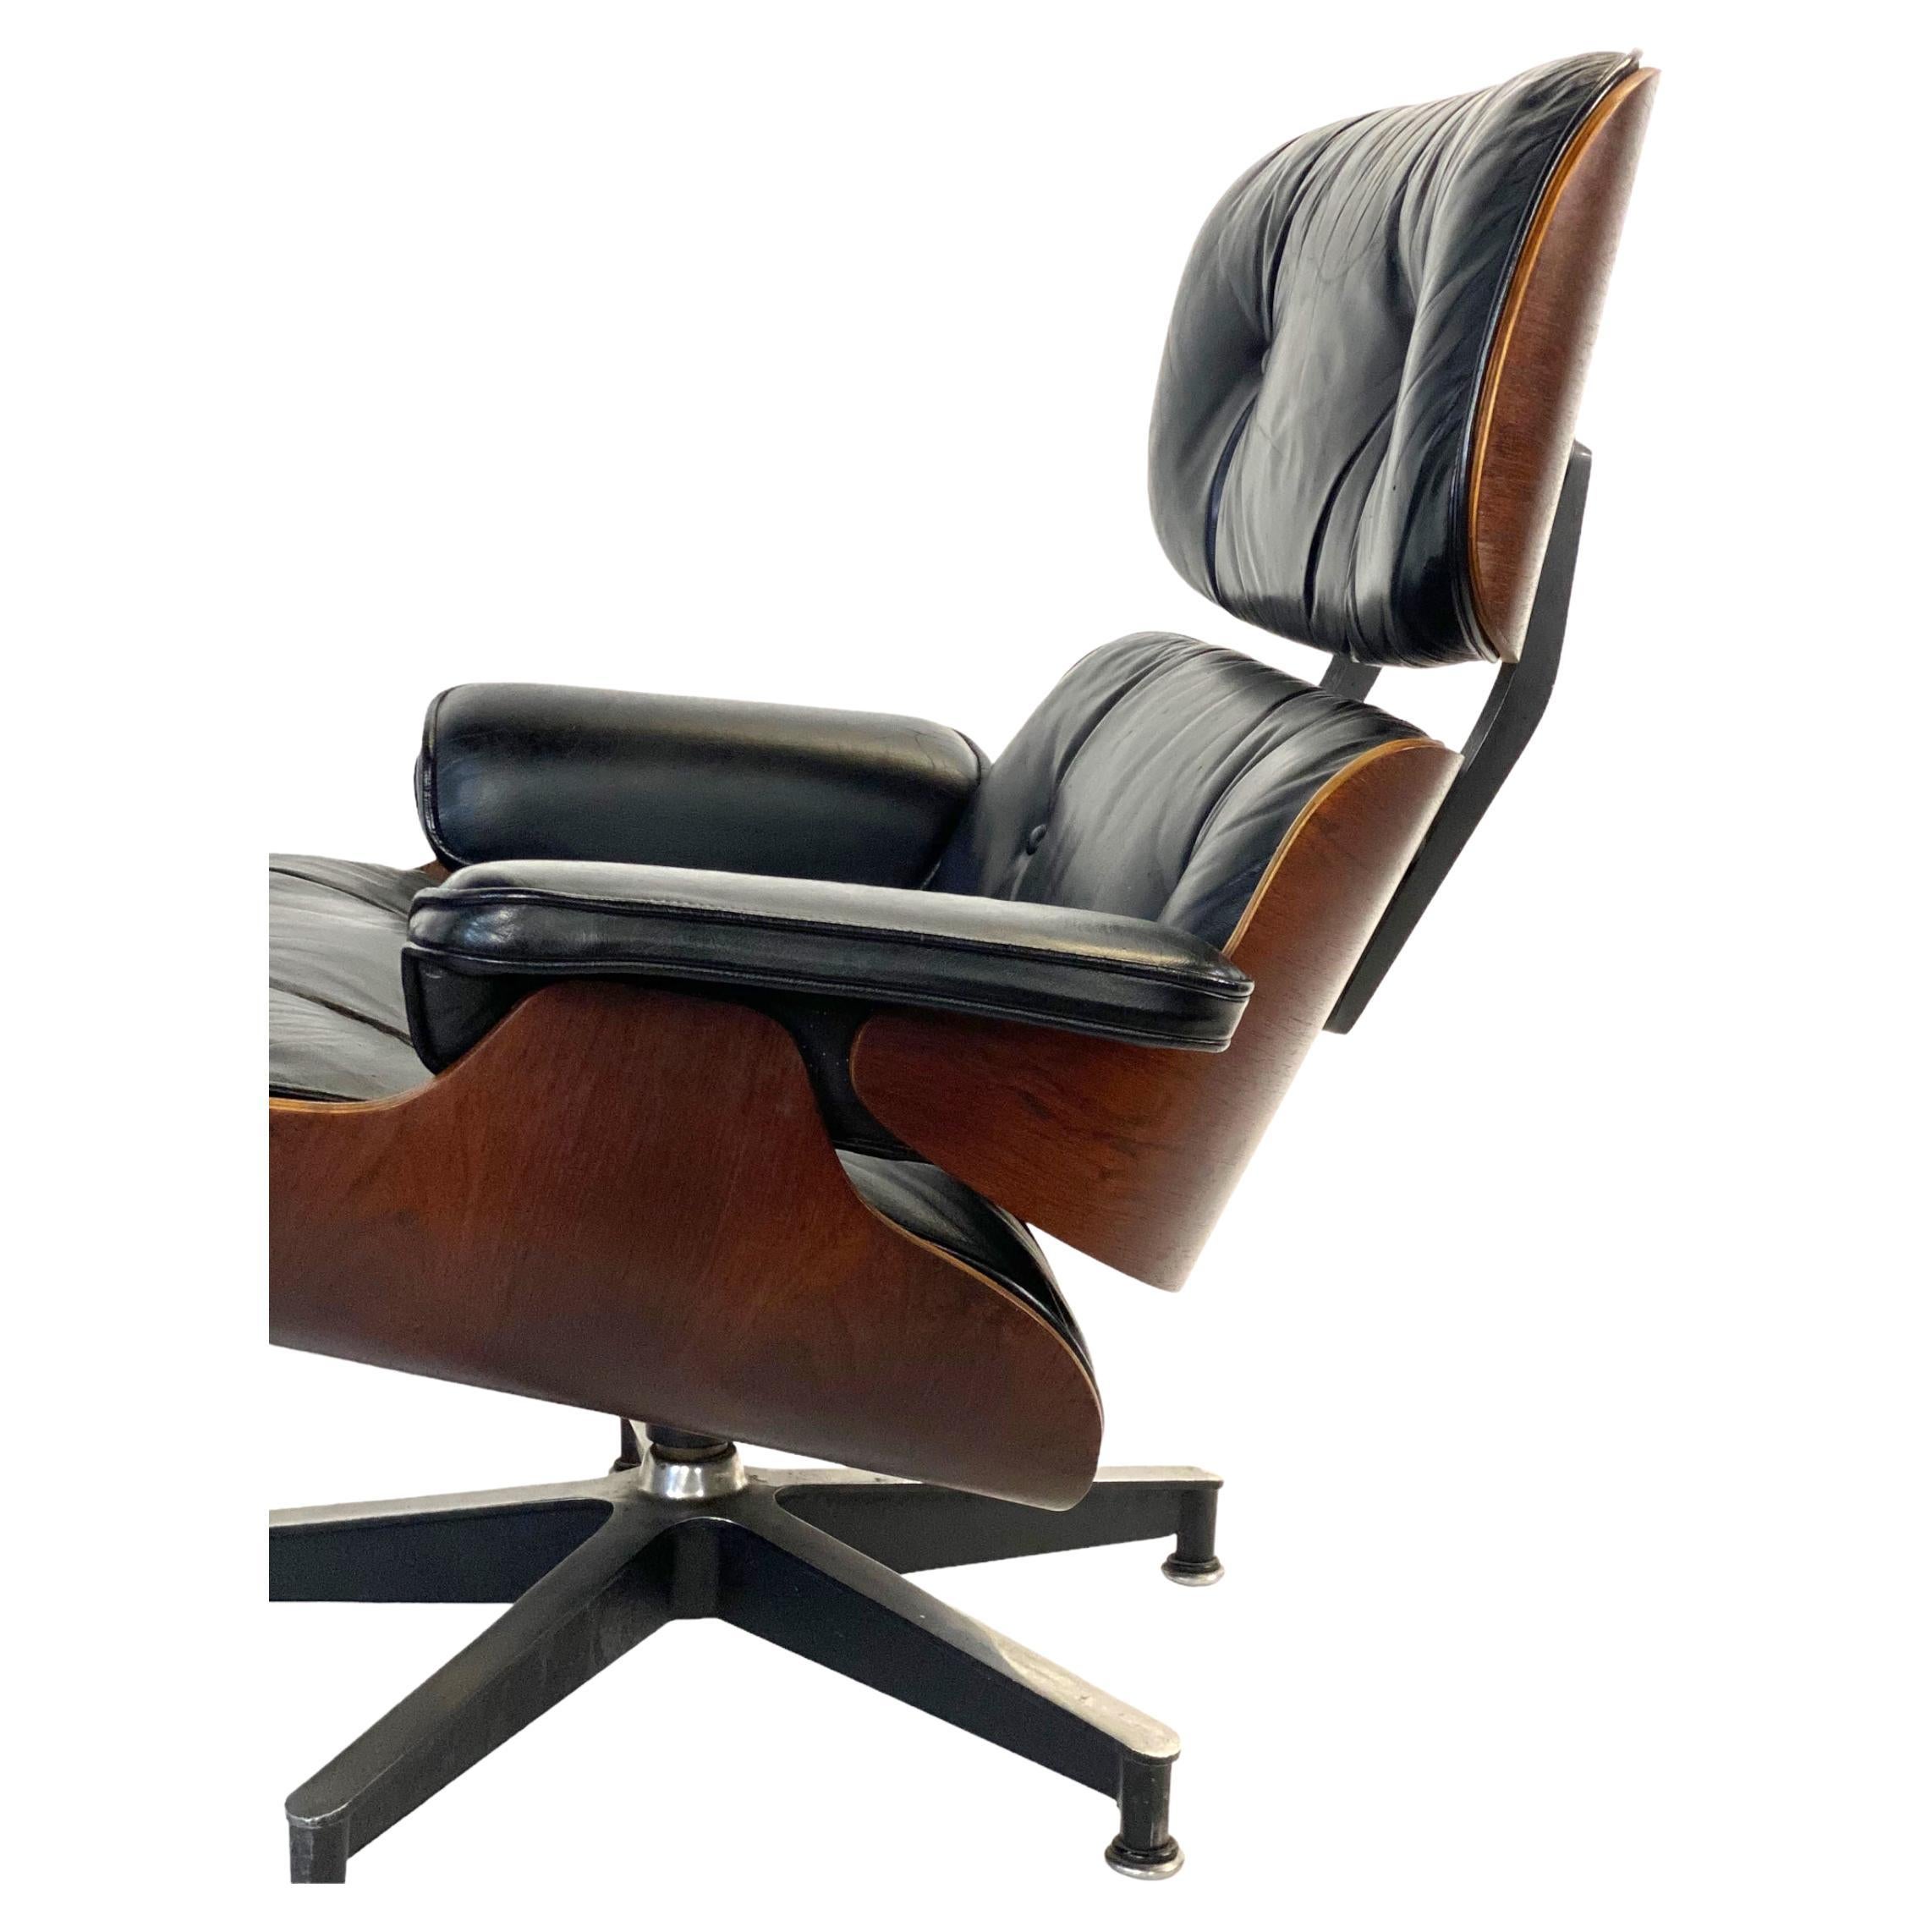 Belle édition de la chaise Eames Lounge classique (modèle 670) et de l'ottoman (modèle 671). Exécuté en palissandre brésilien et en cuir noir. Coussins en duvet. Aucun bouton ou vis manquant. Signé et garanti authentique. La chaise appartenait à